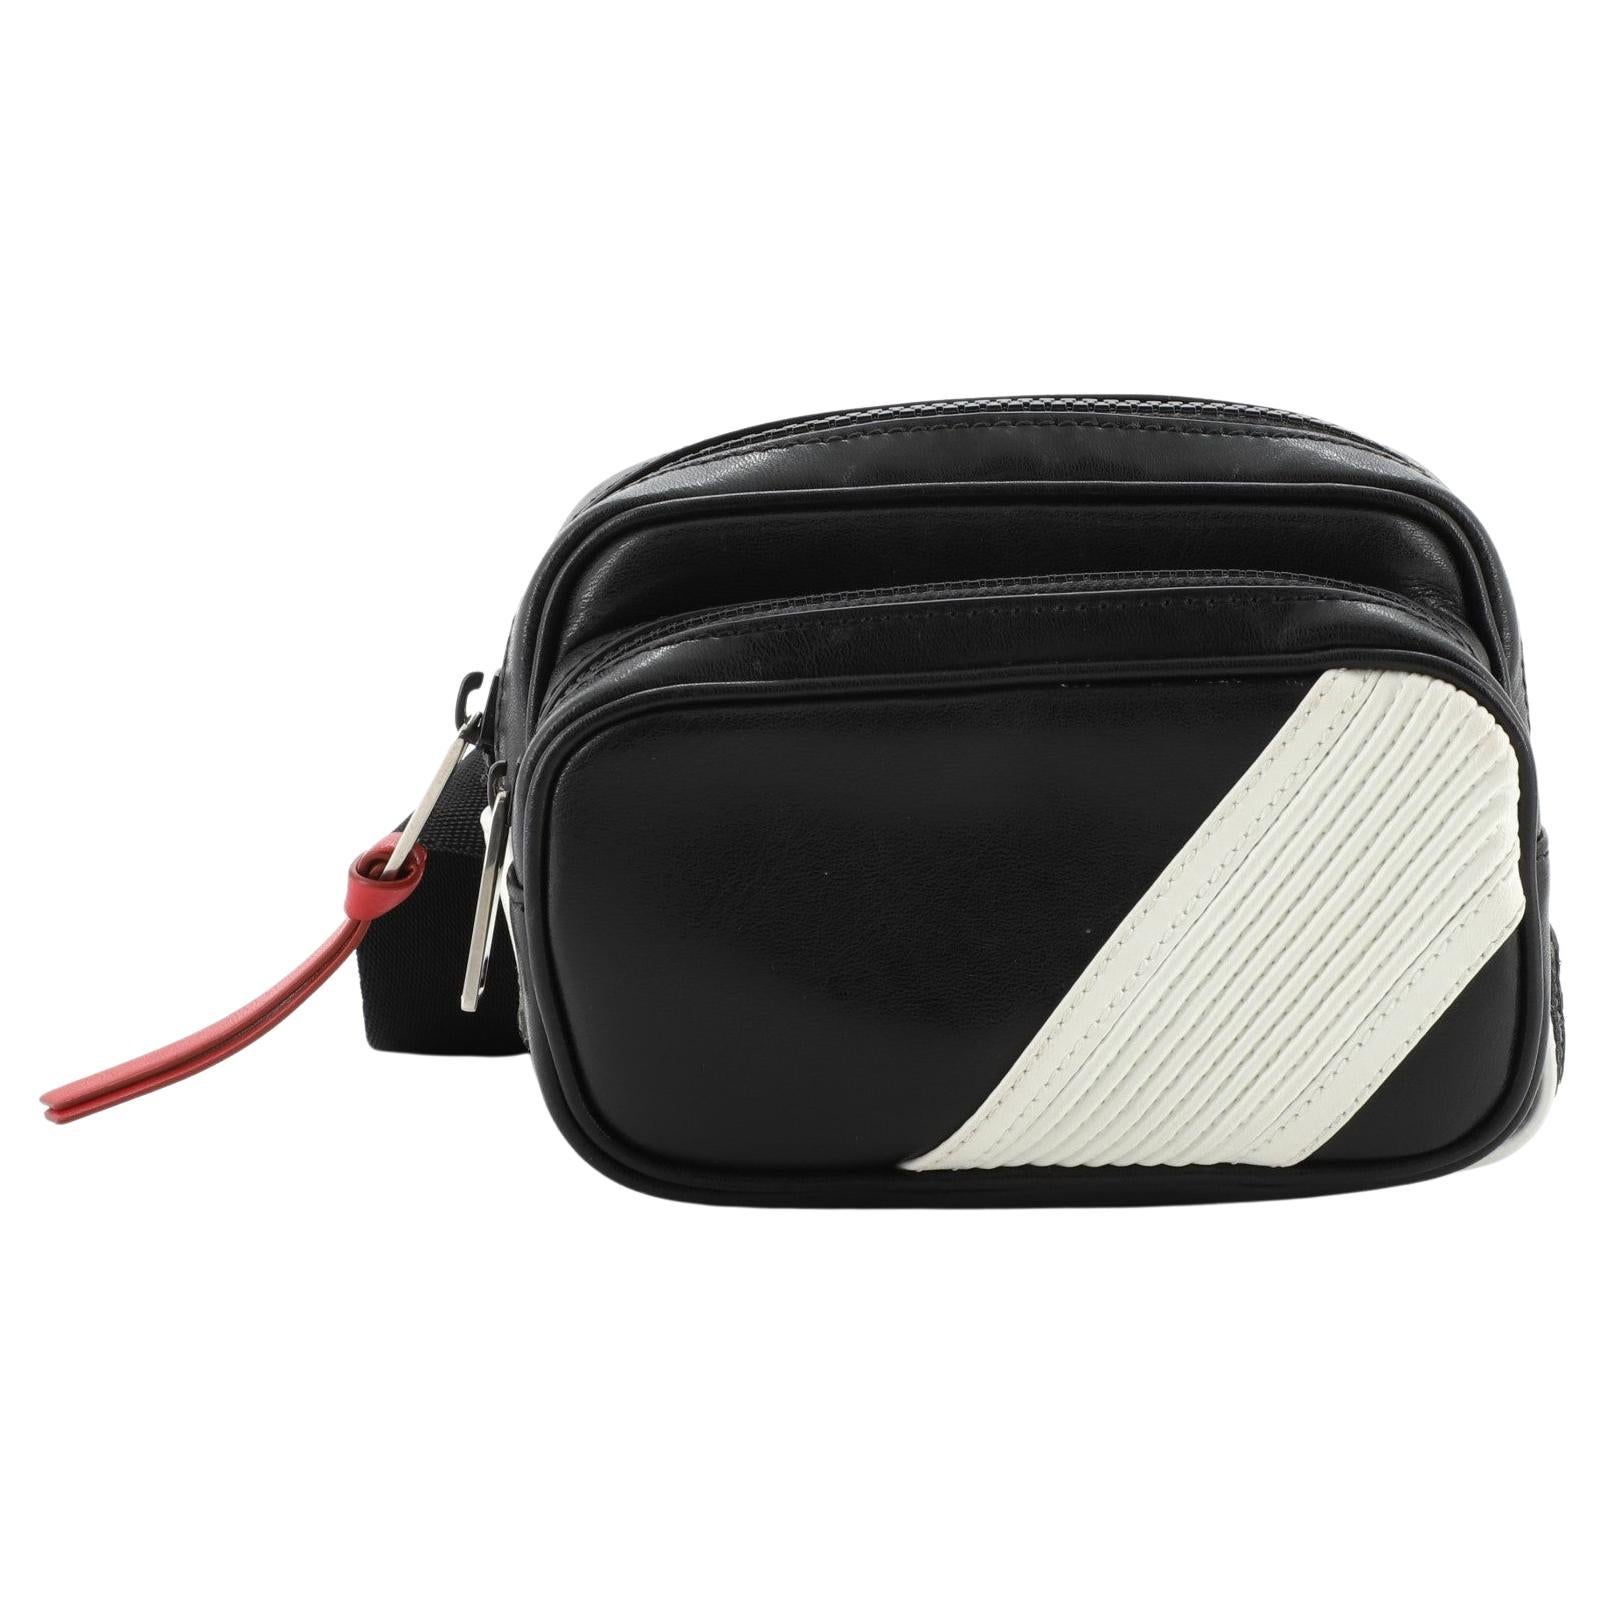 Chanel 19 Belt Bag - 7 For Sale on 1stDibs